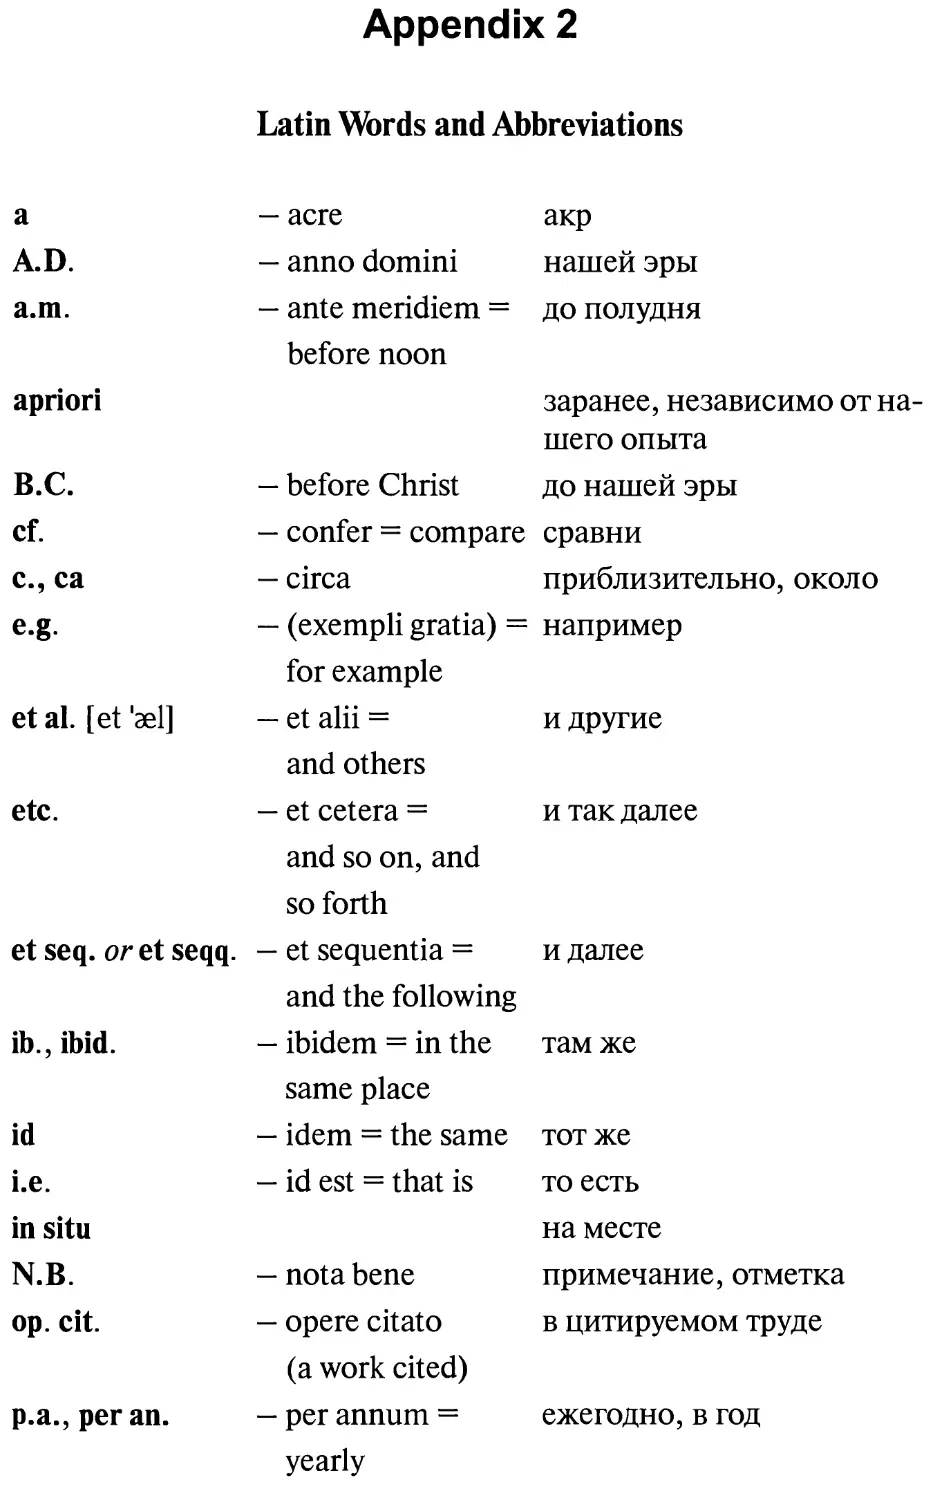 Appendix 2. Latin Words and Abbreviations